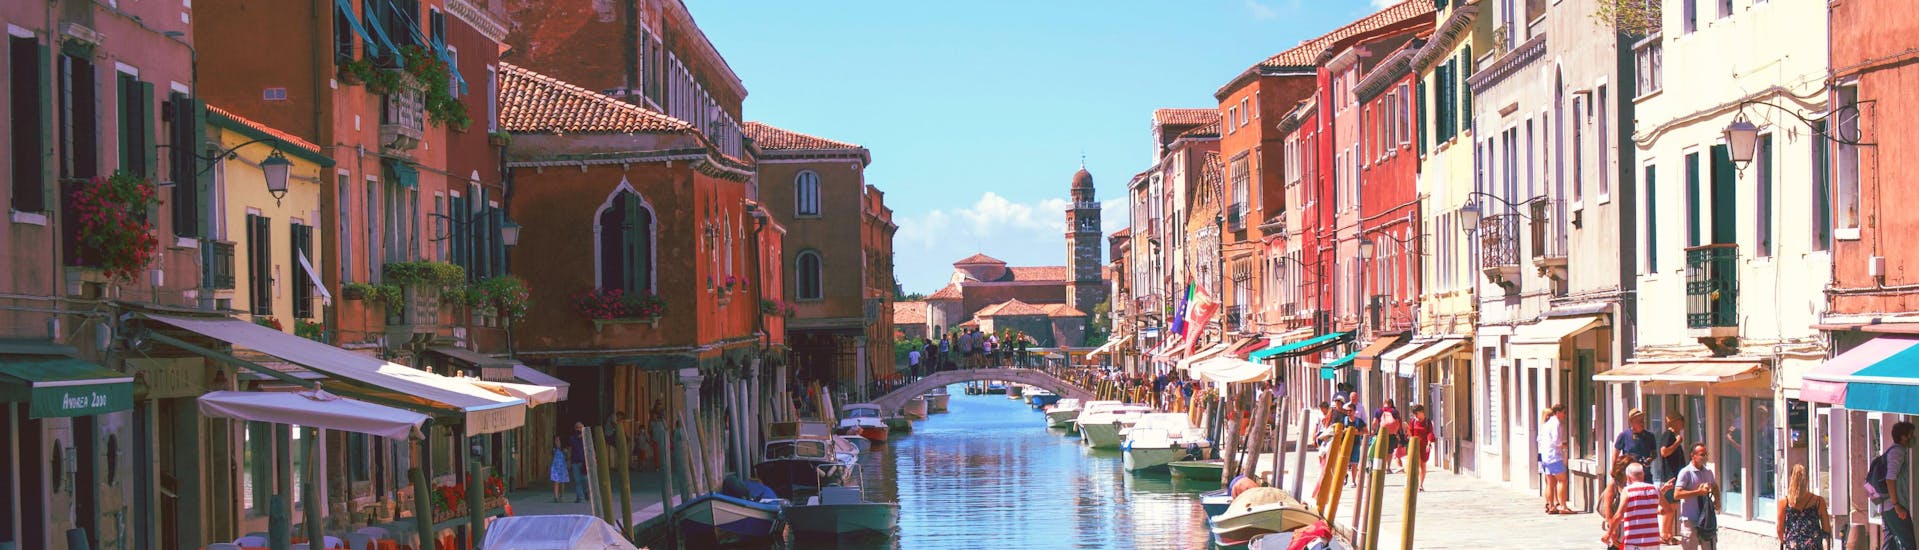 Vue de Burano, une petite île proche de Venise que l'on peut rejoindre lors d'une balade en bateau.